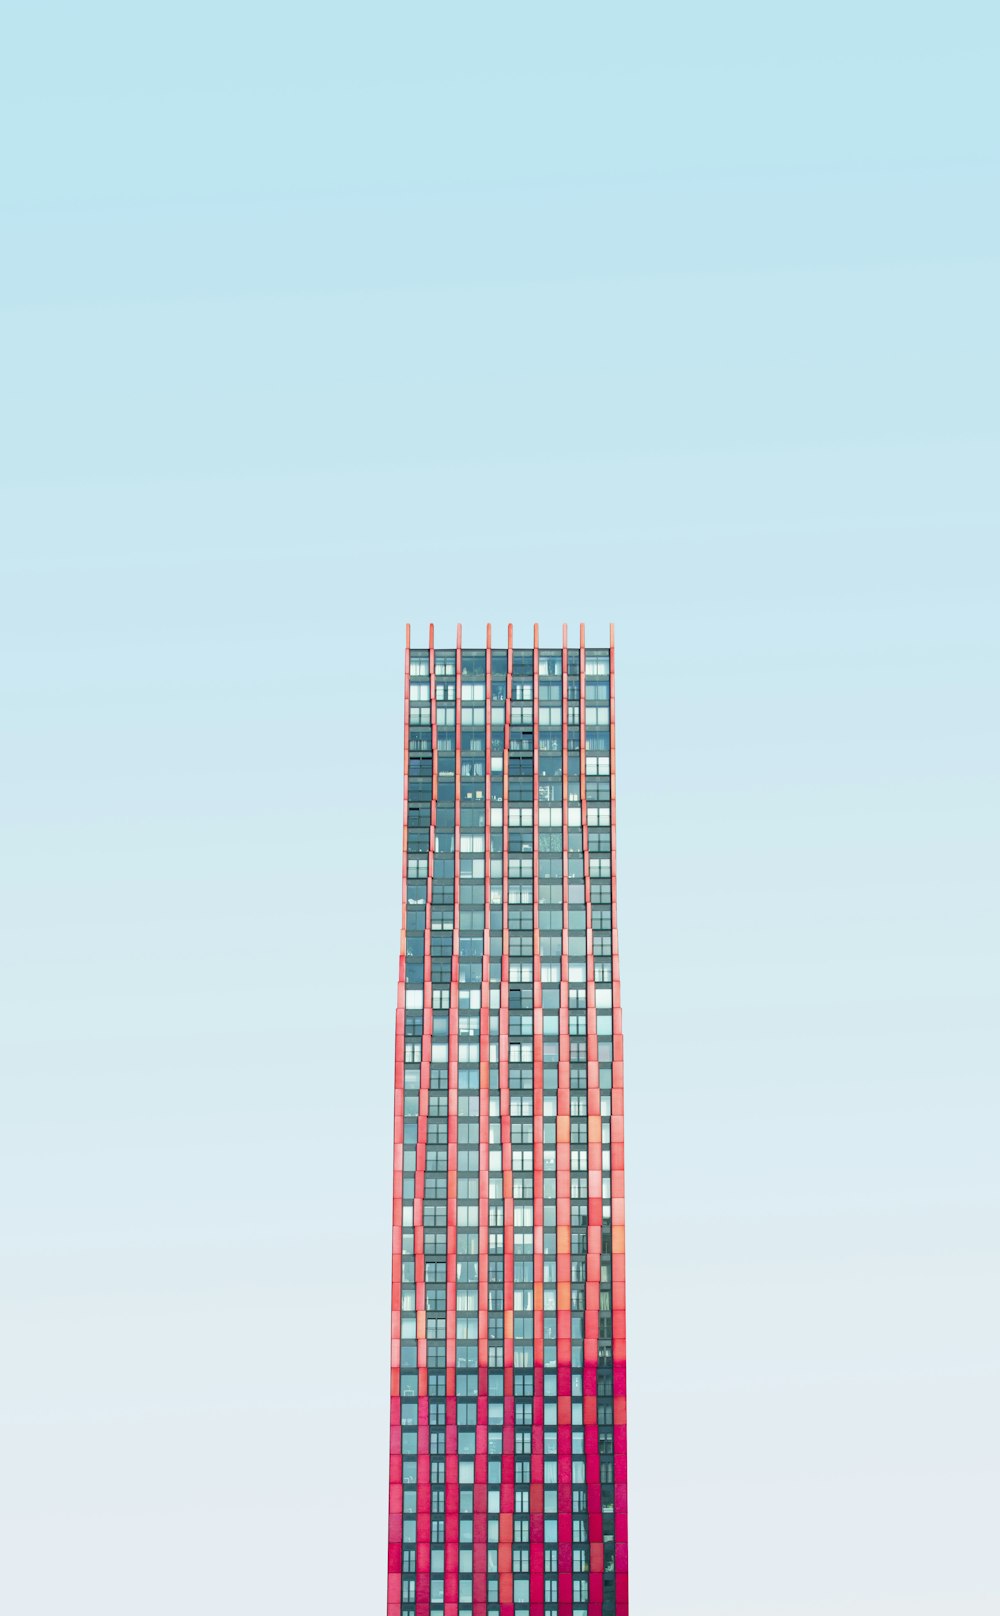 immeuble de grande hauteur sous un ciel bleu pendant la journée